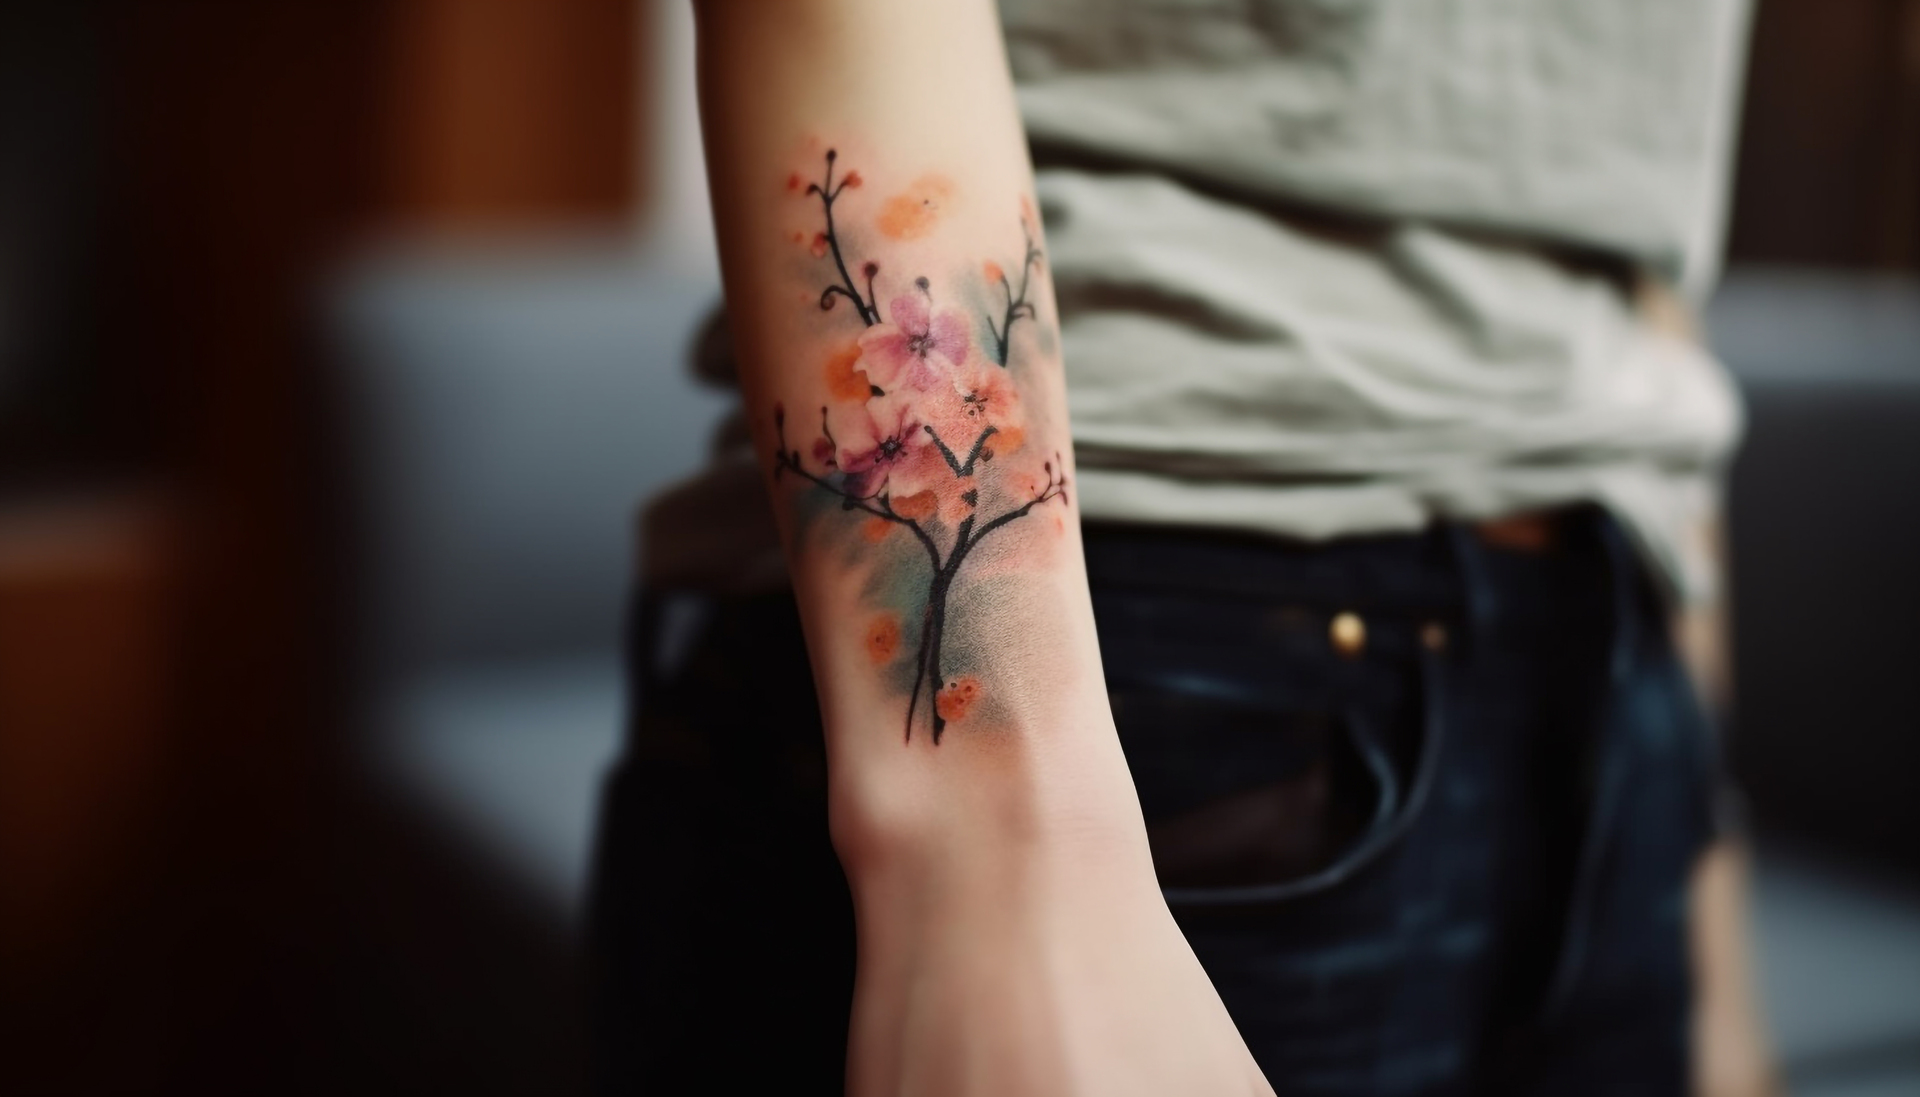 Obrazek przedstawia wspaniały tatuaż, na którym widoczne są piękne kwiaty, a wśród nich wyjątkowa niezapominajka, która przyciąga wzrok swoim niepowtarzalnym urokiem. Kwiaty na tym tatuażu emanują delikatnością i pięknem natury, tworząc harmonijną kompozycję na skórze. Niezapominajka jako symboliczny element dodaje temu tatuażowi głębokiej symboliki, niosąc przesłanie o pamięci, miłości i sentymentach